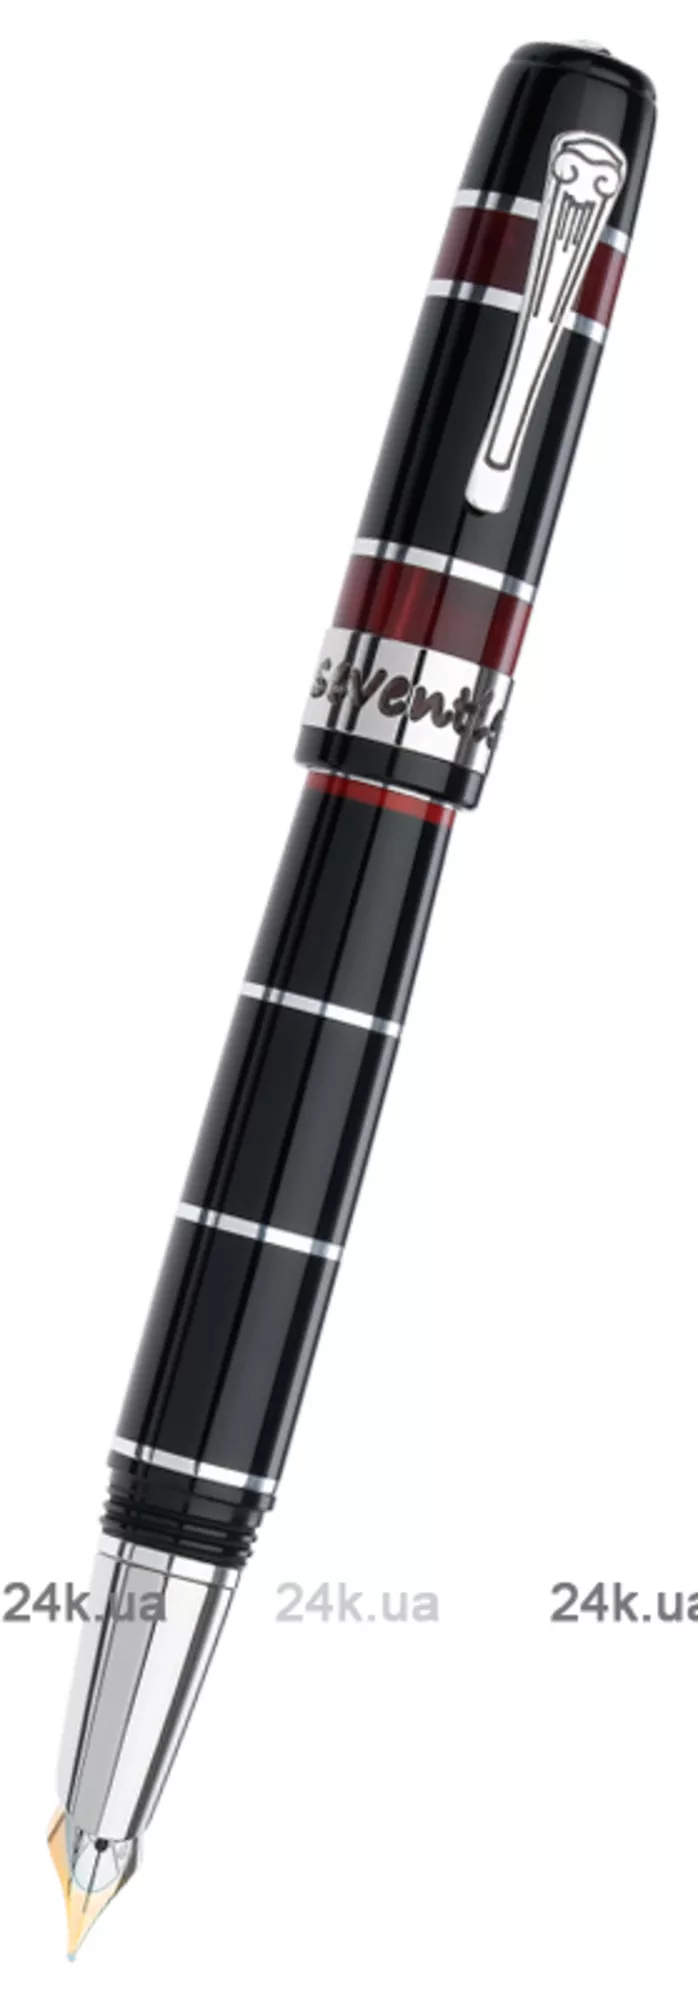 Ручка Marlen M10.102 FP Black